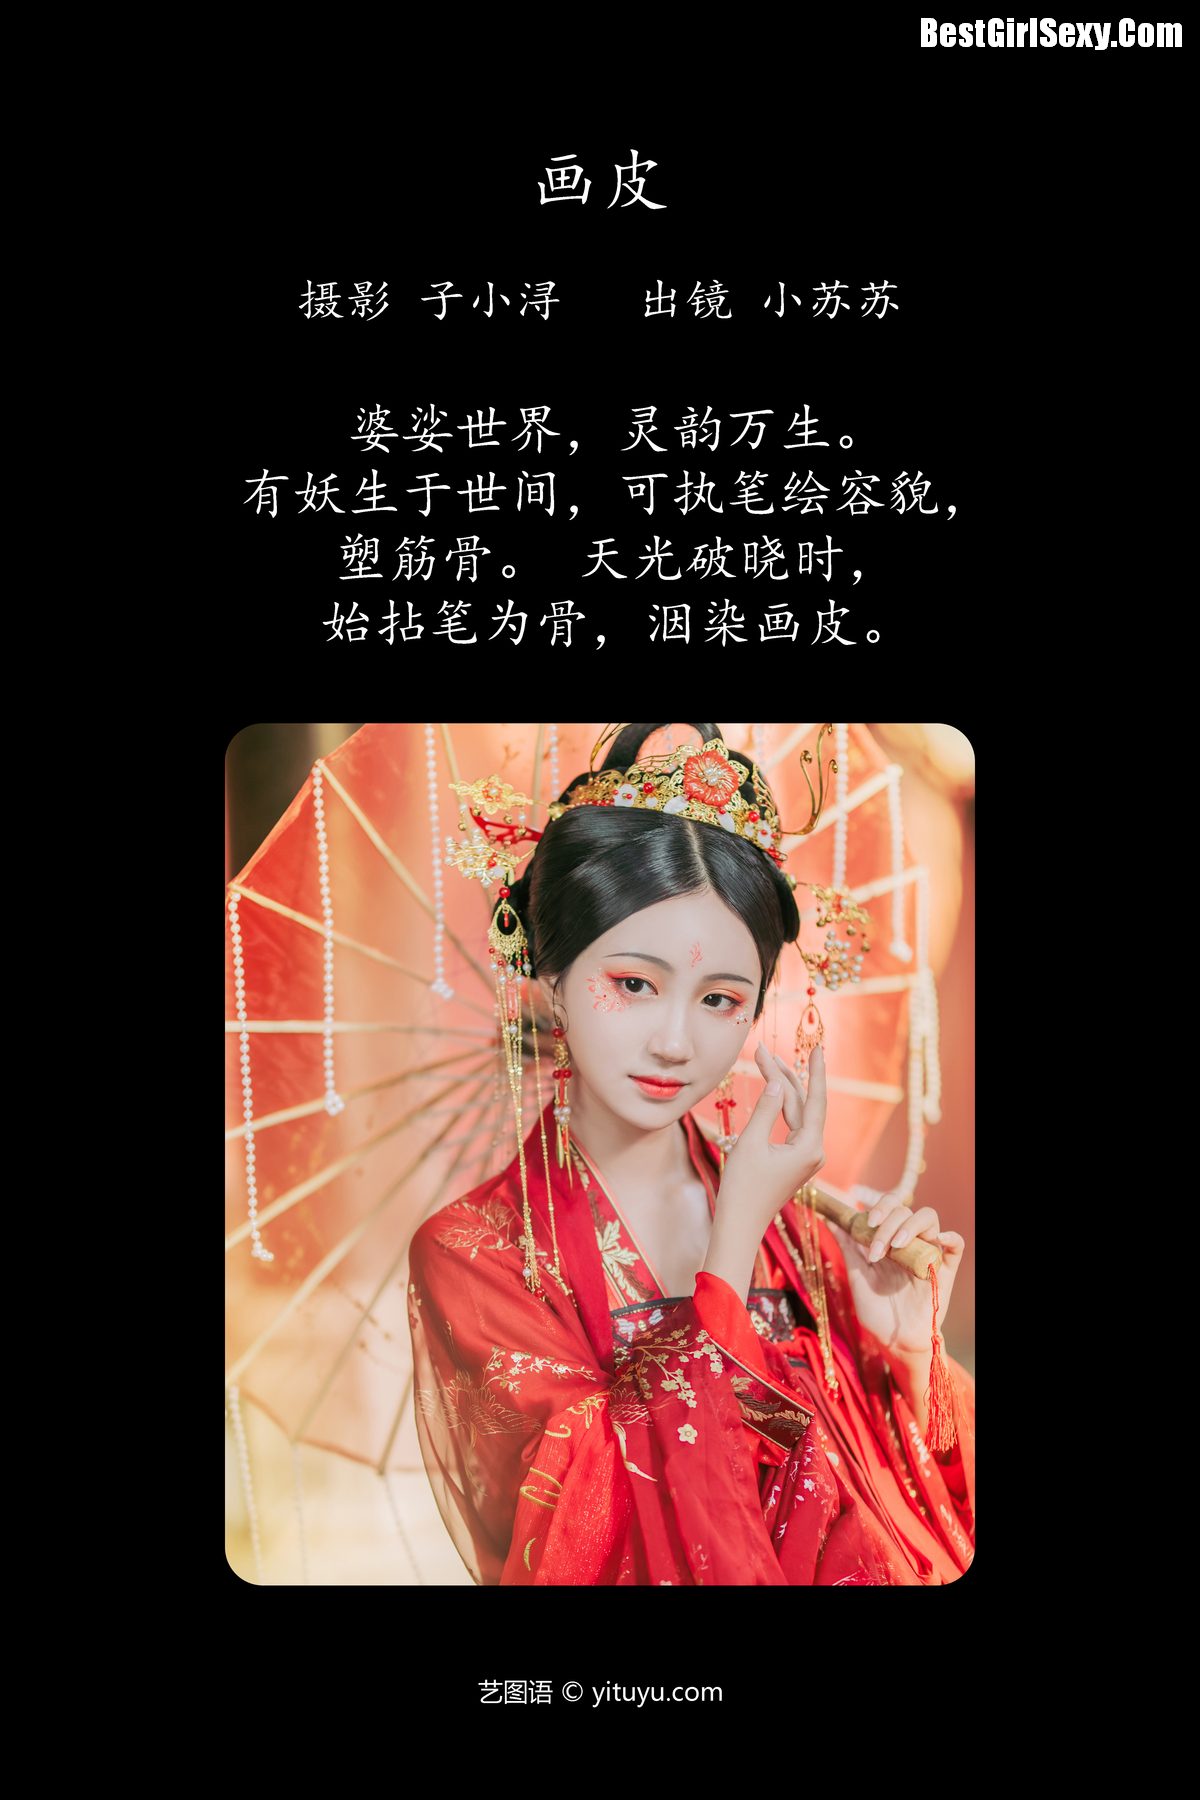 YiTuYu艺图语 Vol 4101 Qi Luo Sheng De Xiao Su Su 0001 7926674422.jpg